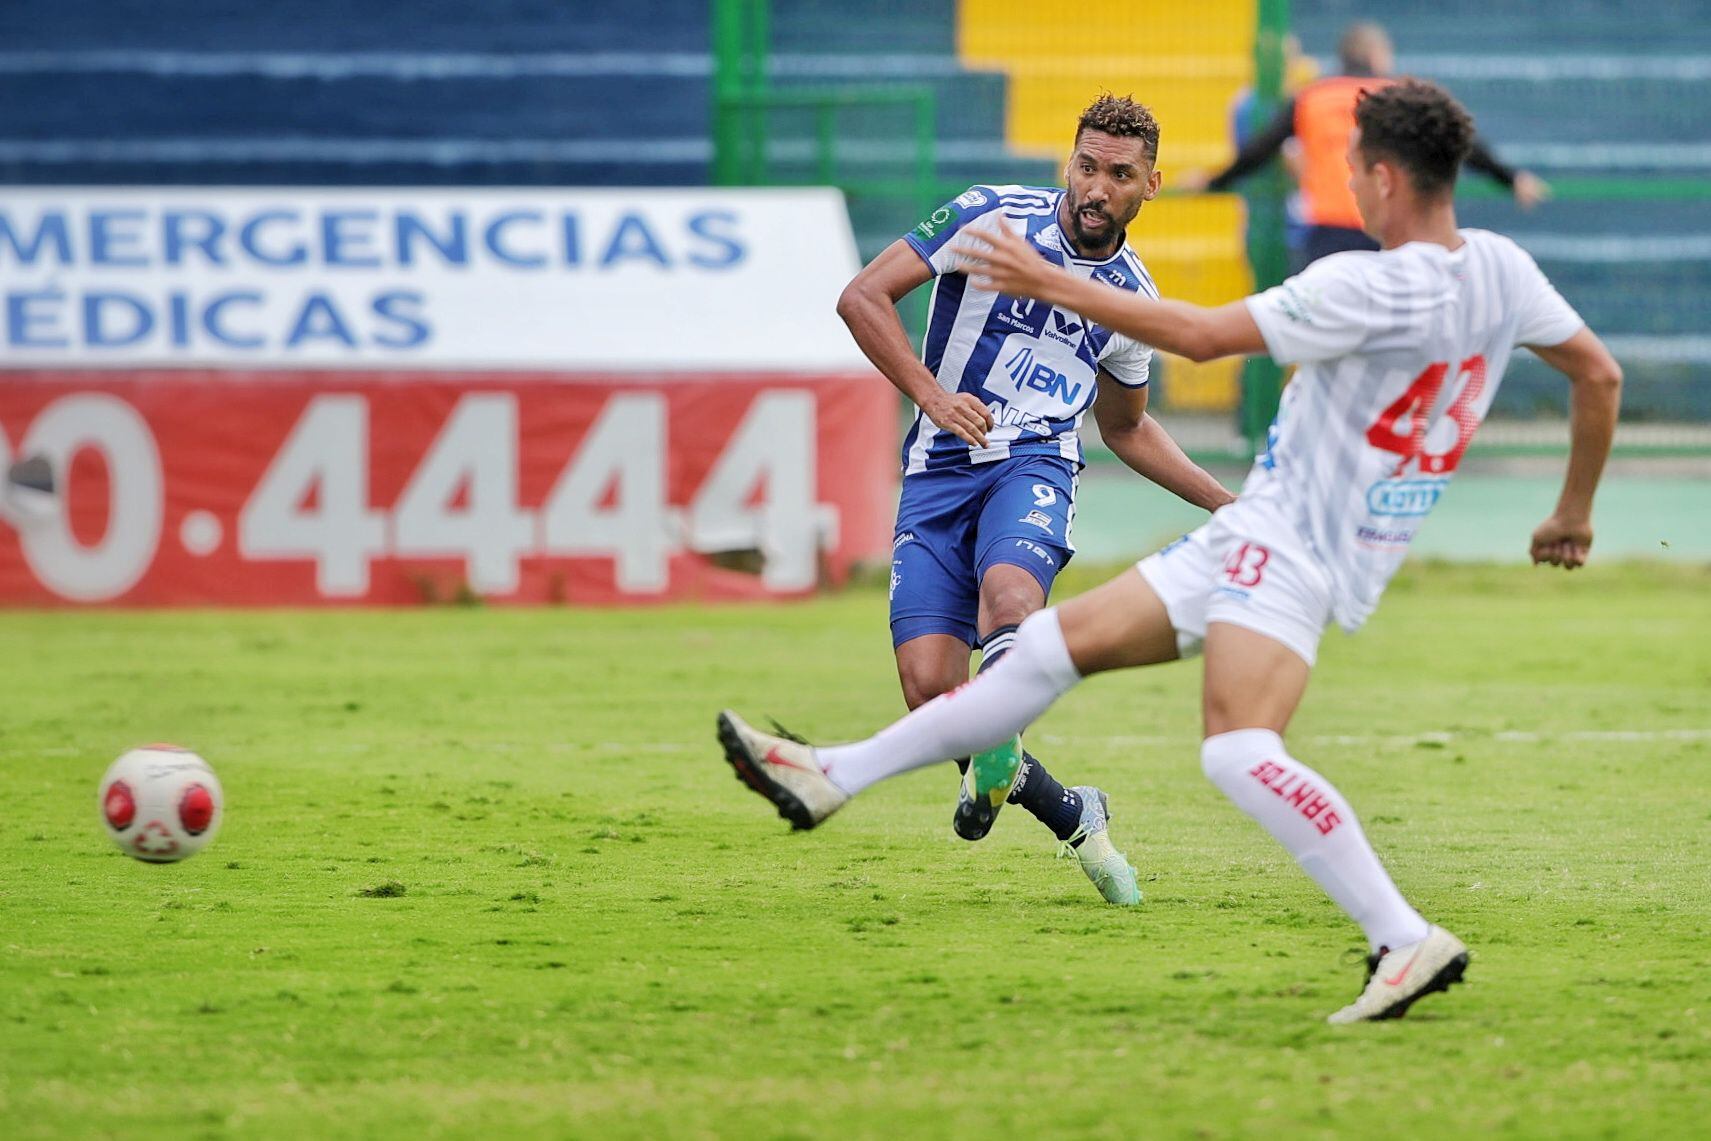 El delantero de Cartaginés Marcel Hernańdez ingresó al minuto 56 ante Santos, luego de un mes sin jugar. Pese a que no había ni entrenado en cancha, marcó un gol en el empate 2 a 2 en la fecha 14. 